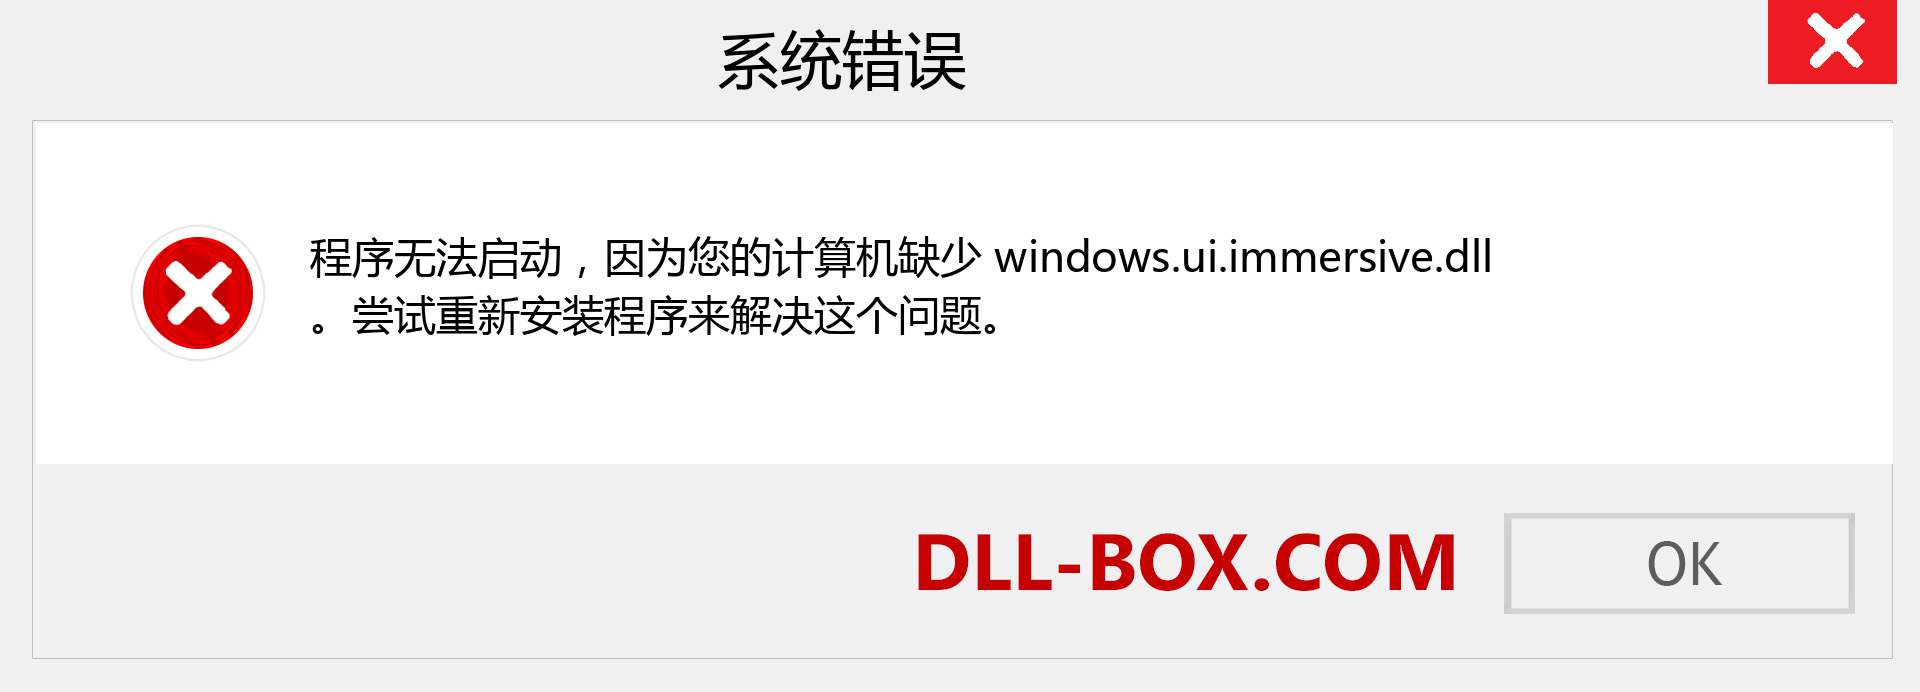 windows.ui.immersive.dll 文件丢失？。 适用于 Windows 7、8、10 的下载 - 修复 Windows、照片、图像上的 windows.ui.immersive dll 丢失错误